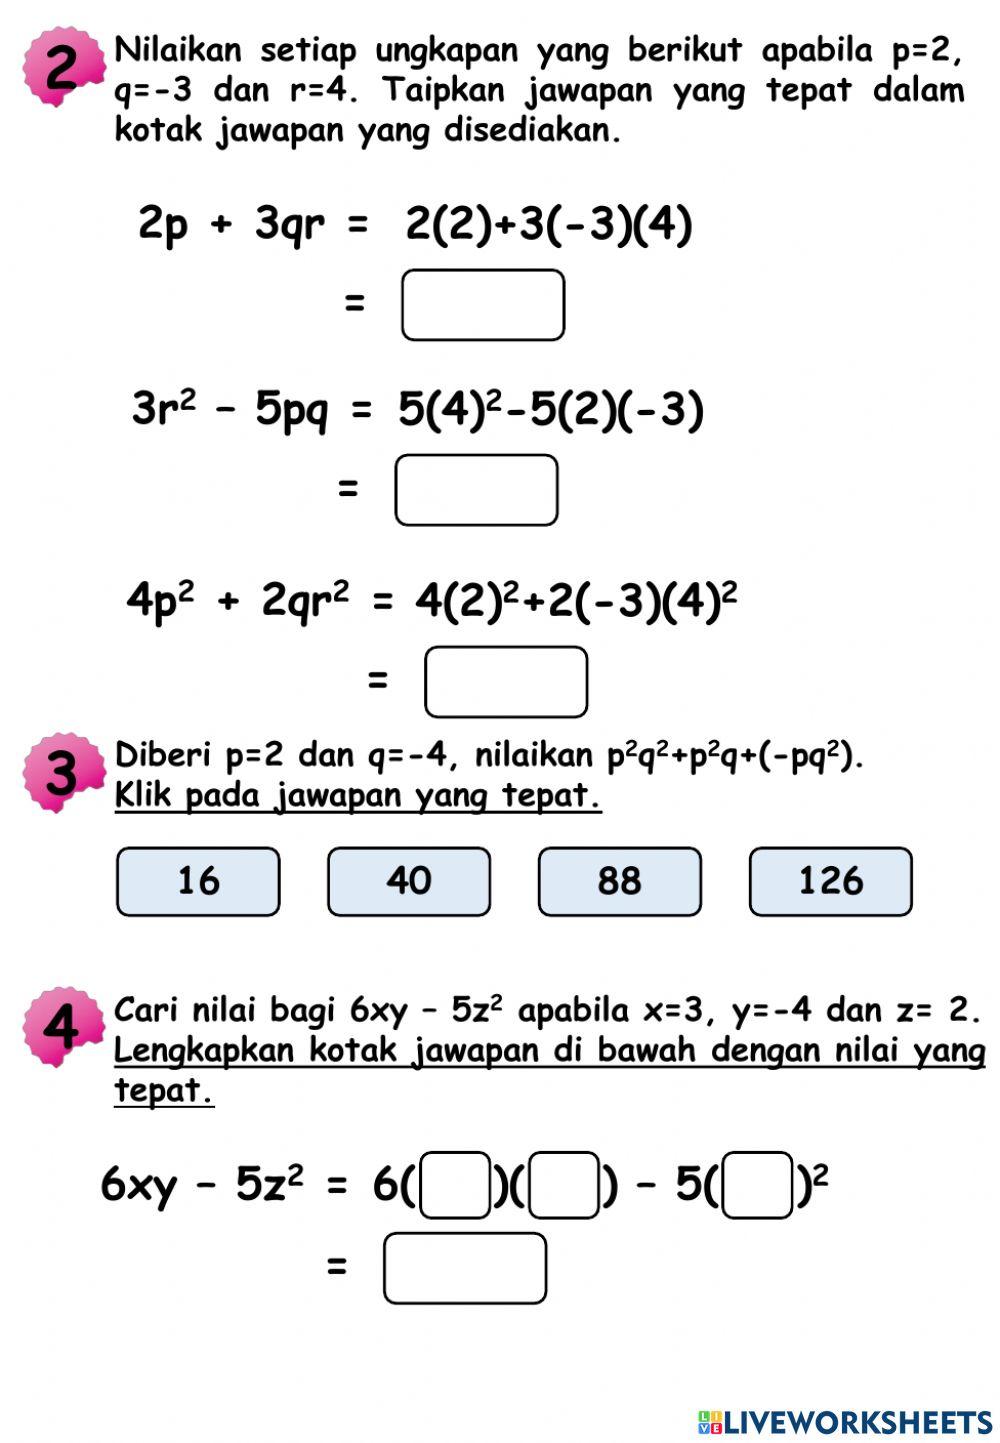 Ungkapan algebra:menentukan nilai ungkapan algebra